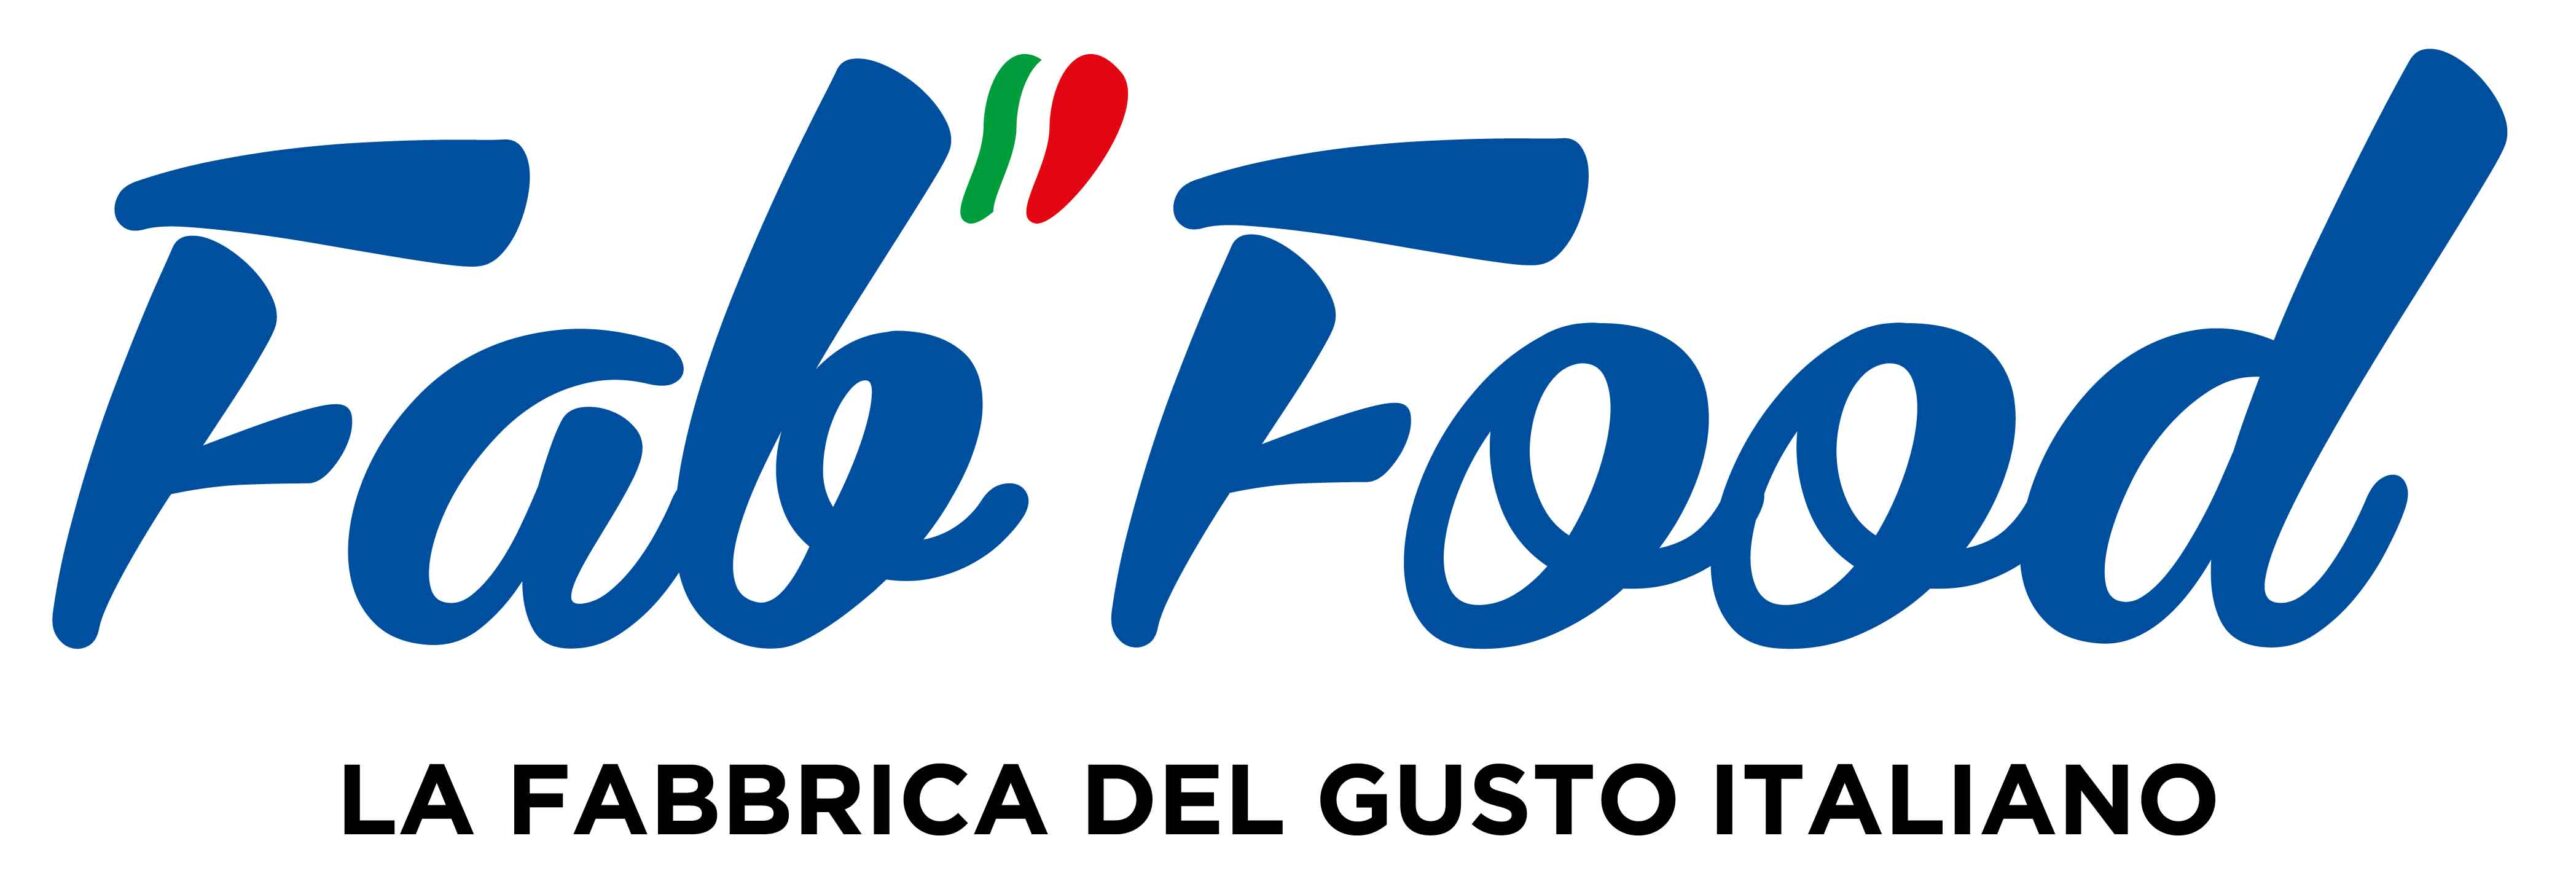 Fab Food. La fabbrica del gusto italiano